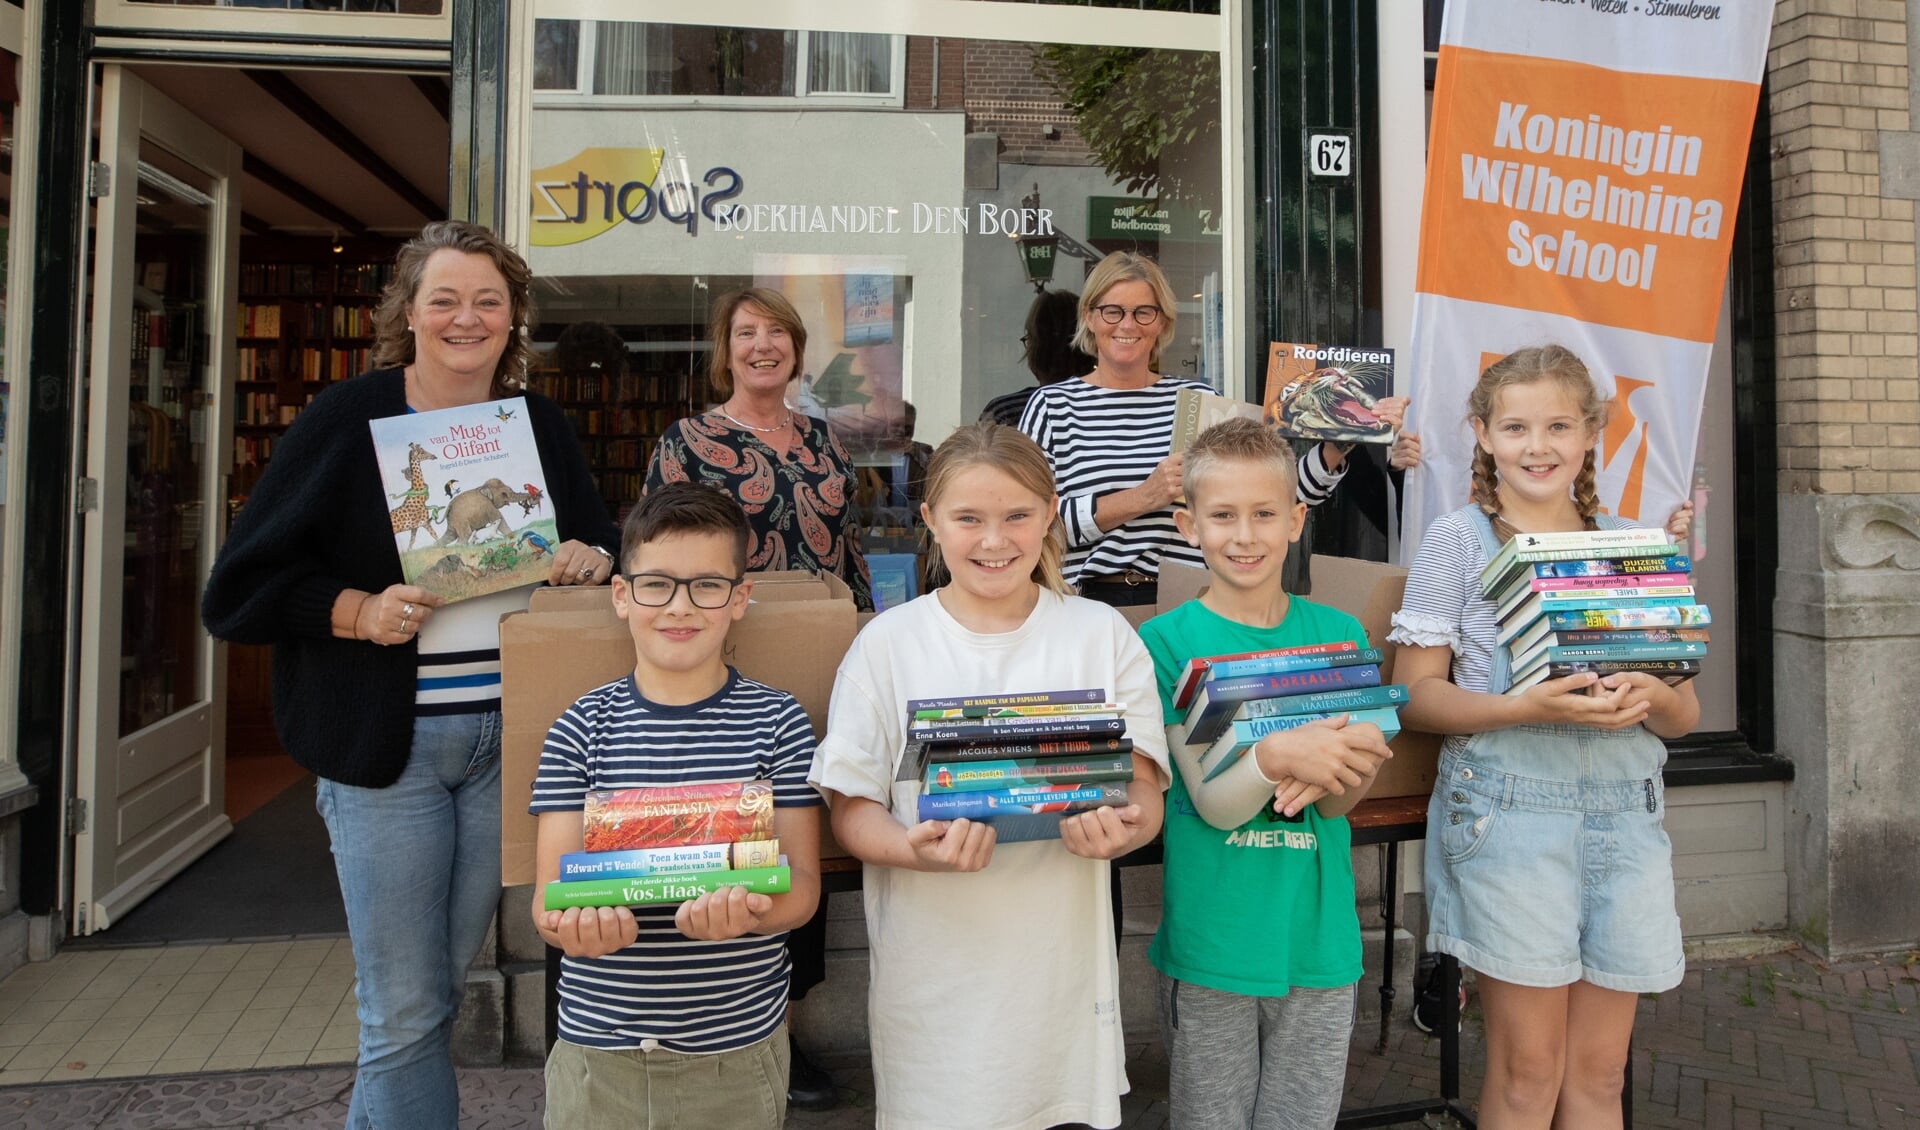 Leerlingen van de Koningin Wilhelminaschool (KWS) in Baarn, haalden bestelde boeken op bij Boekhandel den Boer, in de Laanstraat Baarn.